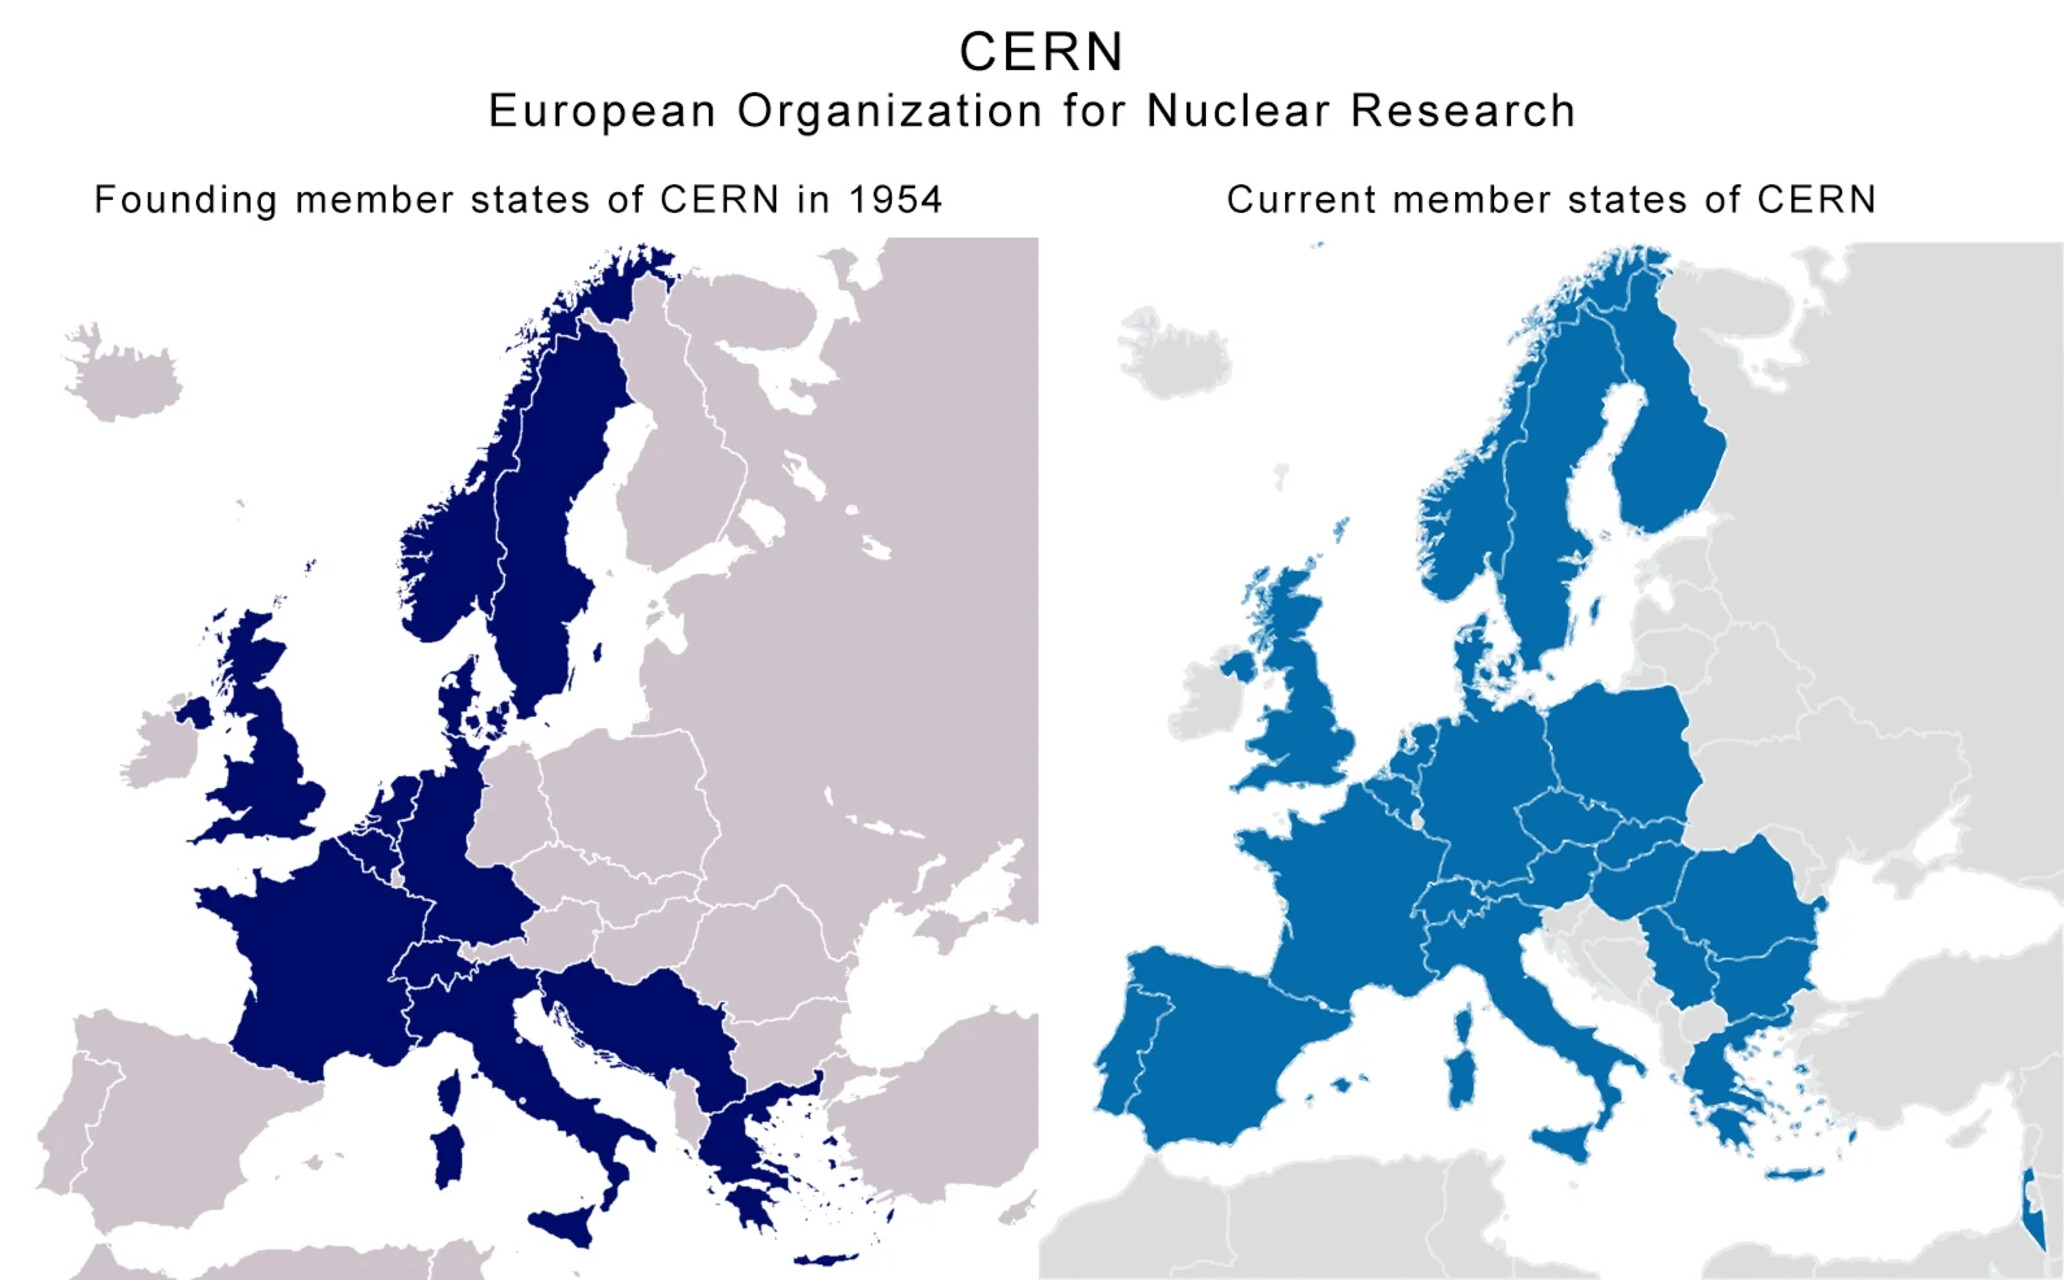 Brasilien: zwei Karten mit einem Vergleich zwischen den Gründerländern und den aktuellen Mitgliedsstaaten des CERN